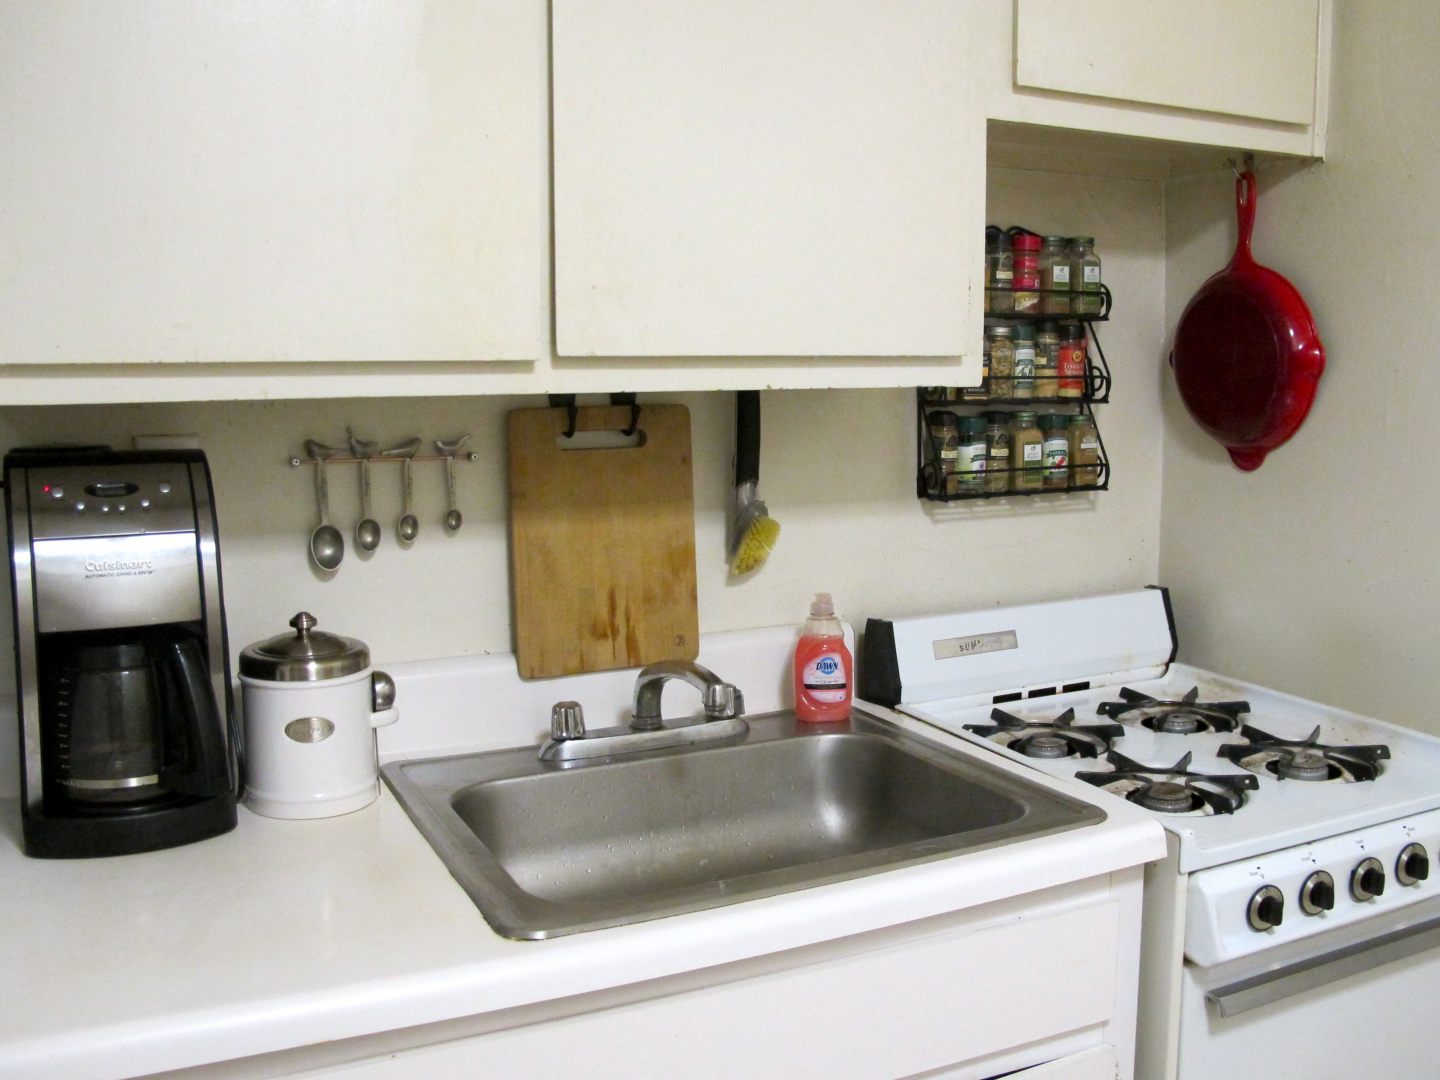 Arrumação de uma cozinha :: Fotos e imagens